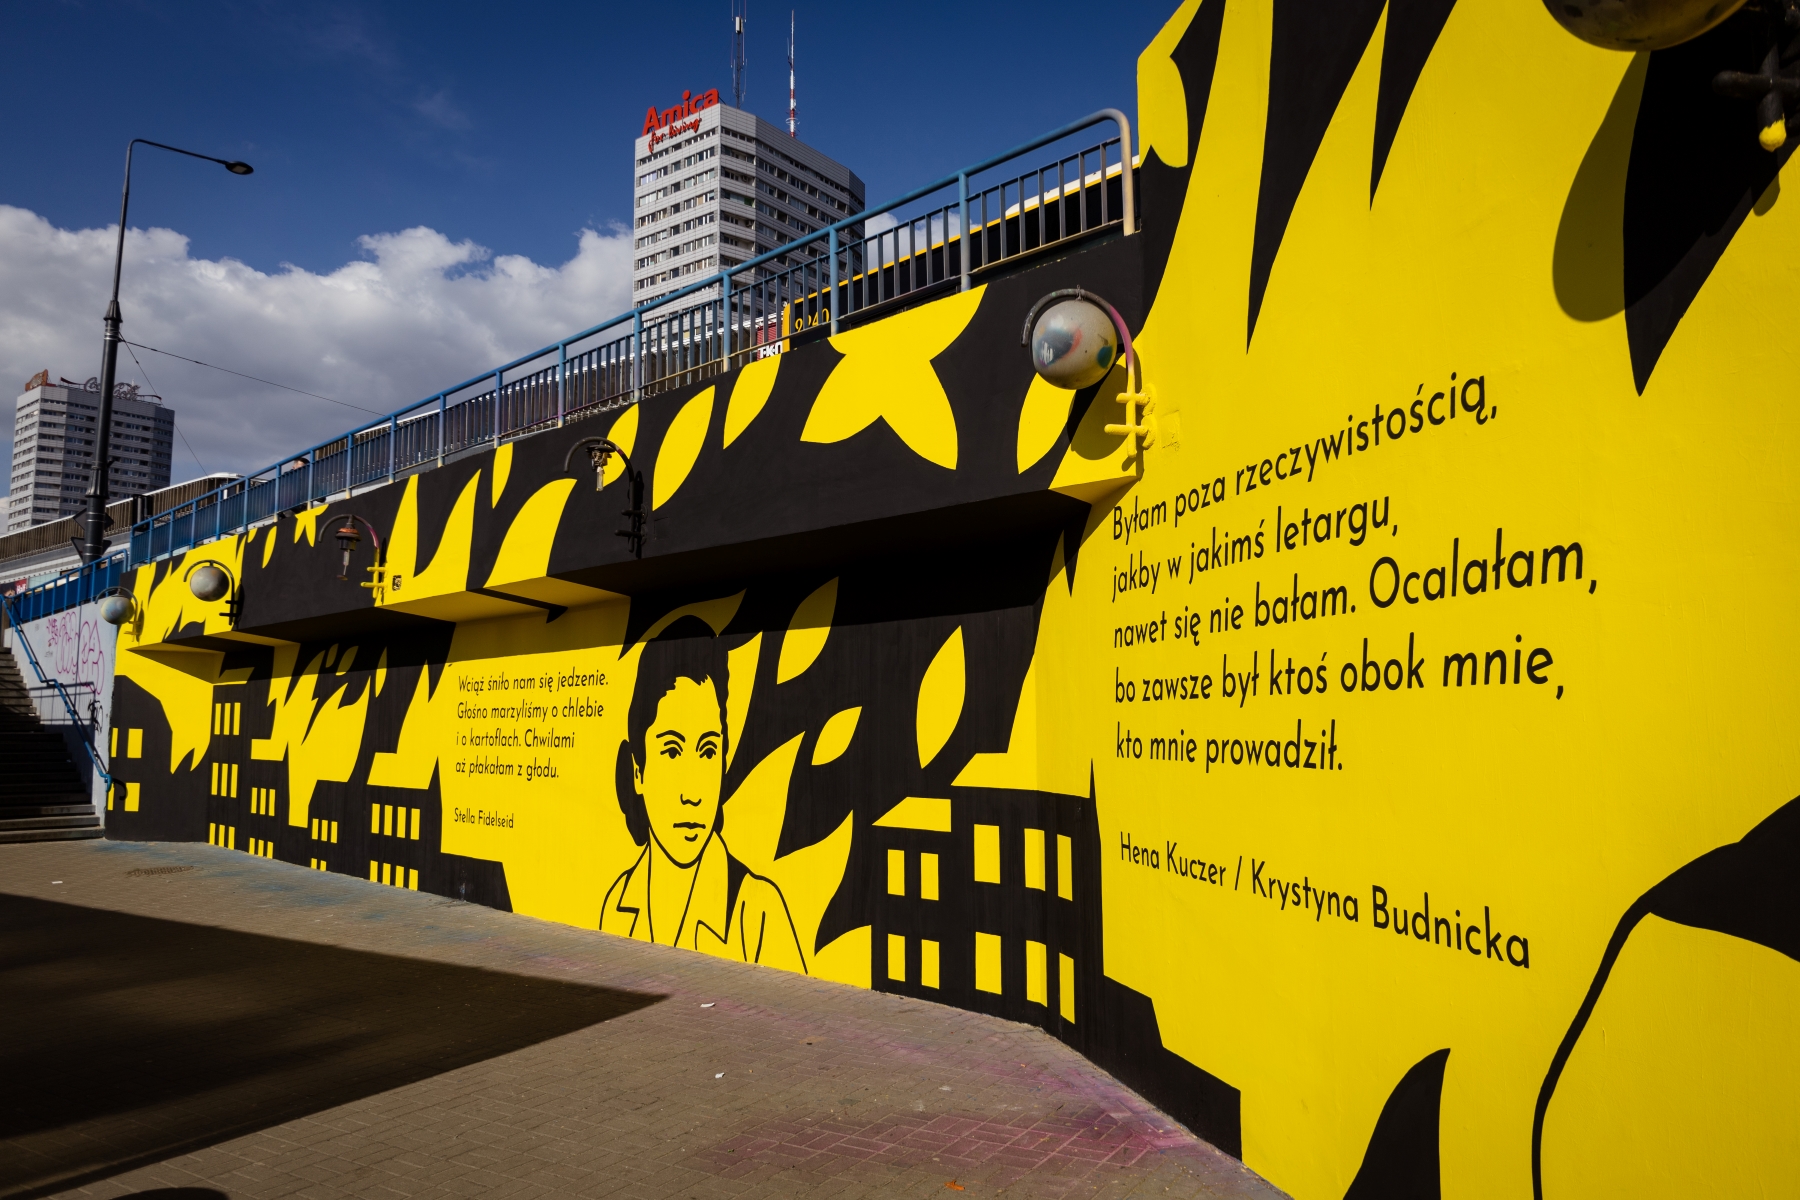 Ściana na tzw. patelni przy metrze Centrum w Warszawie. Podobizna i cytat Krystyny Budnickiej.